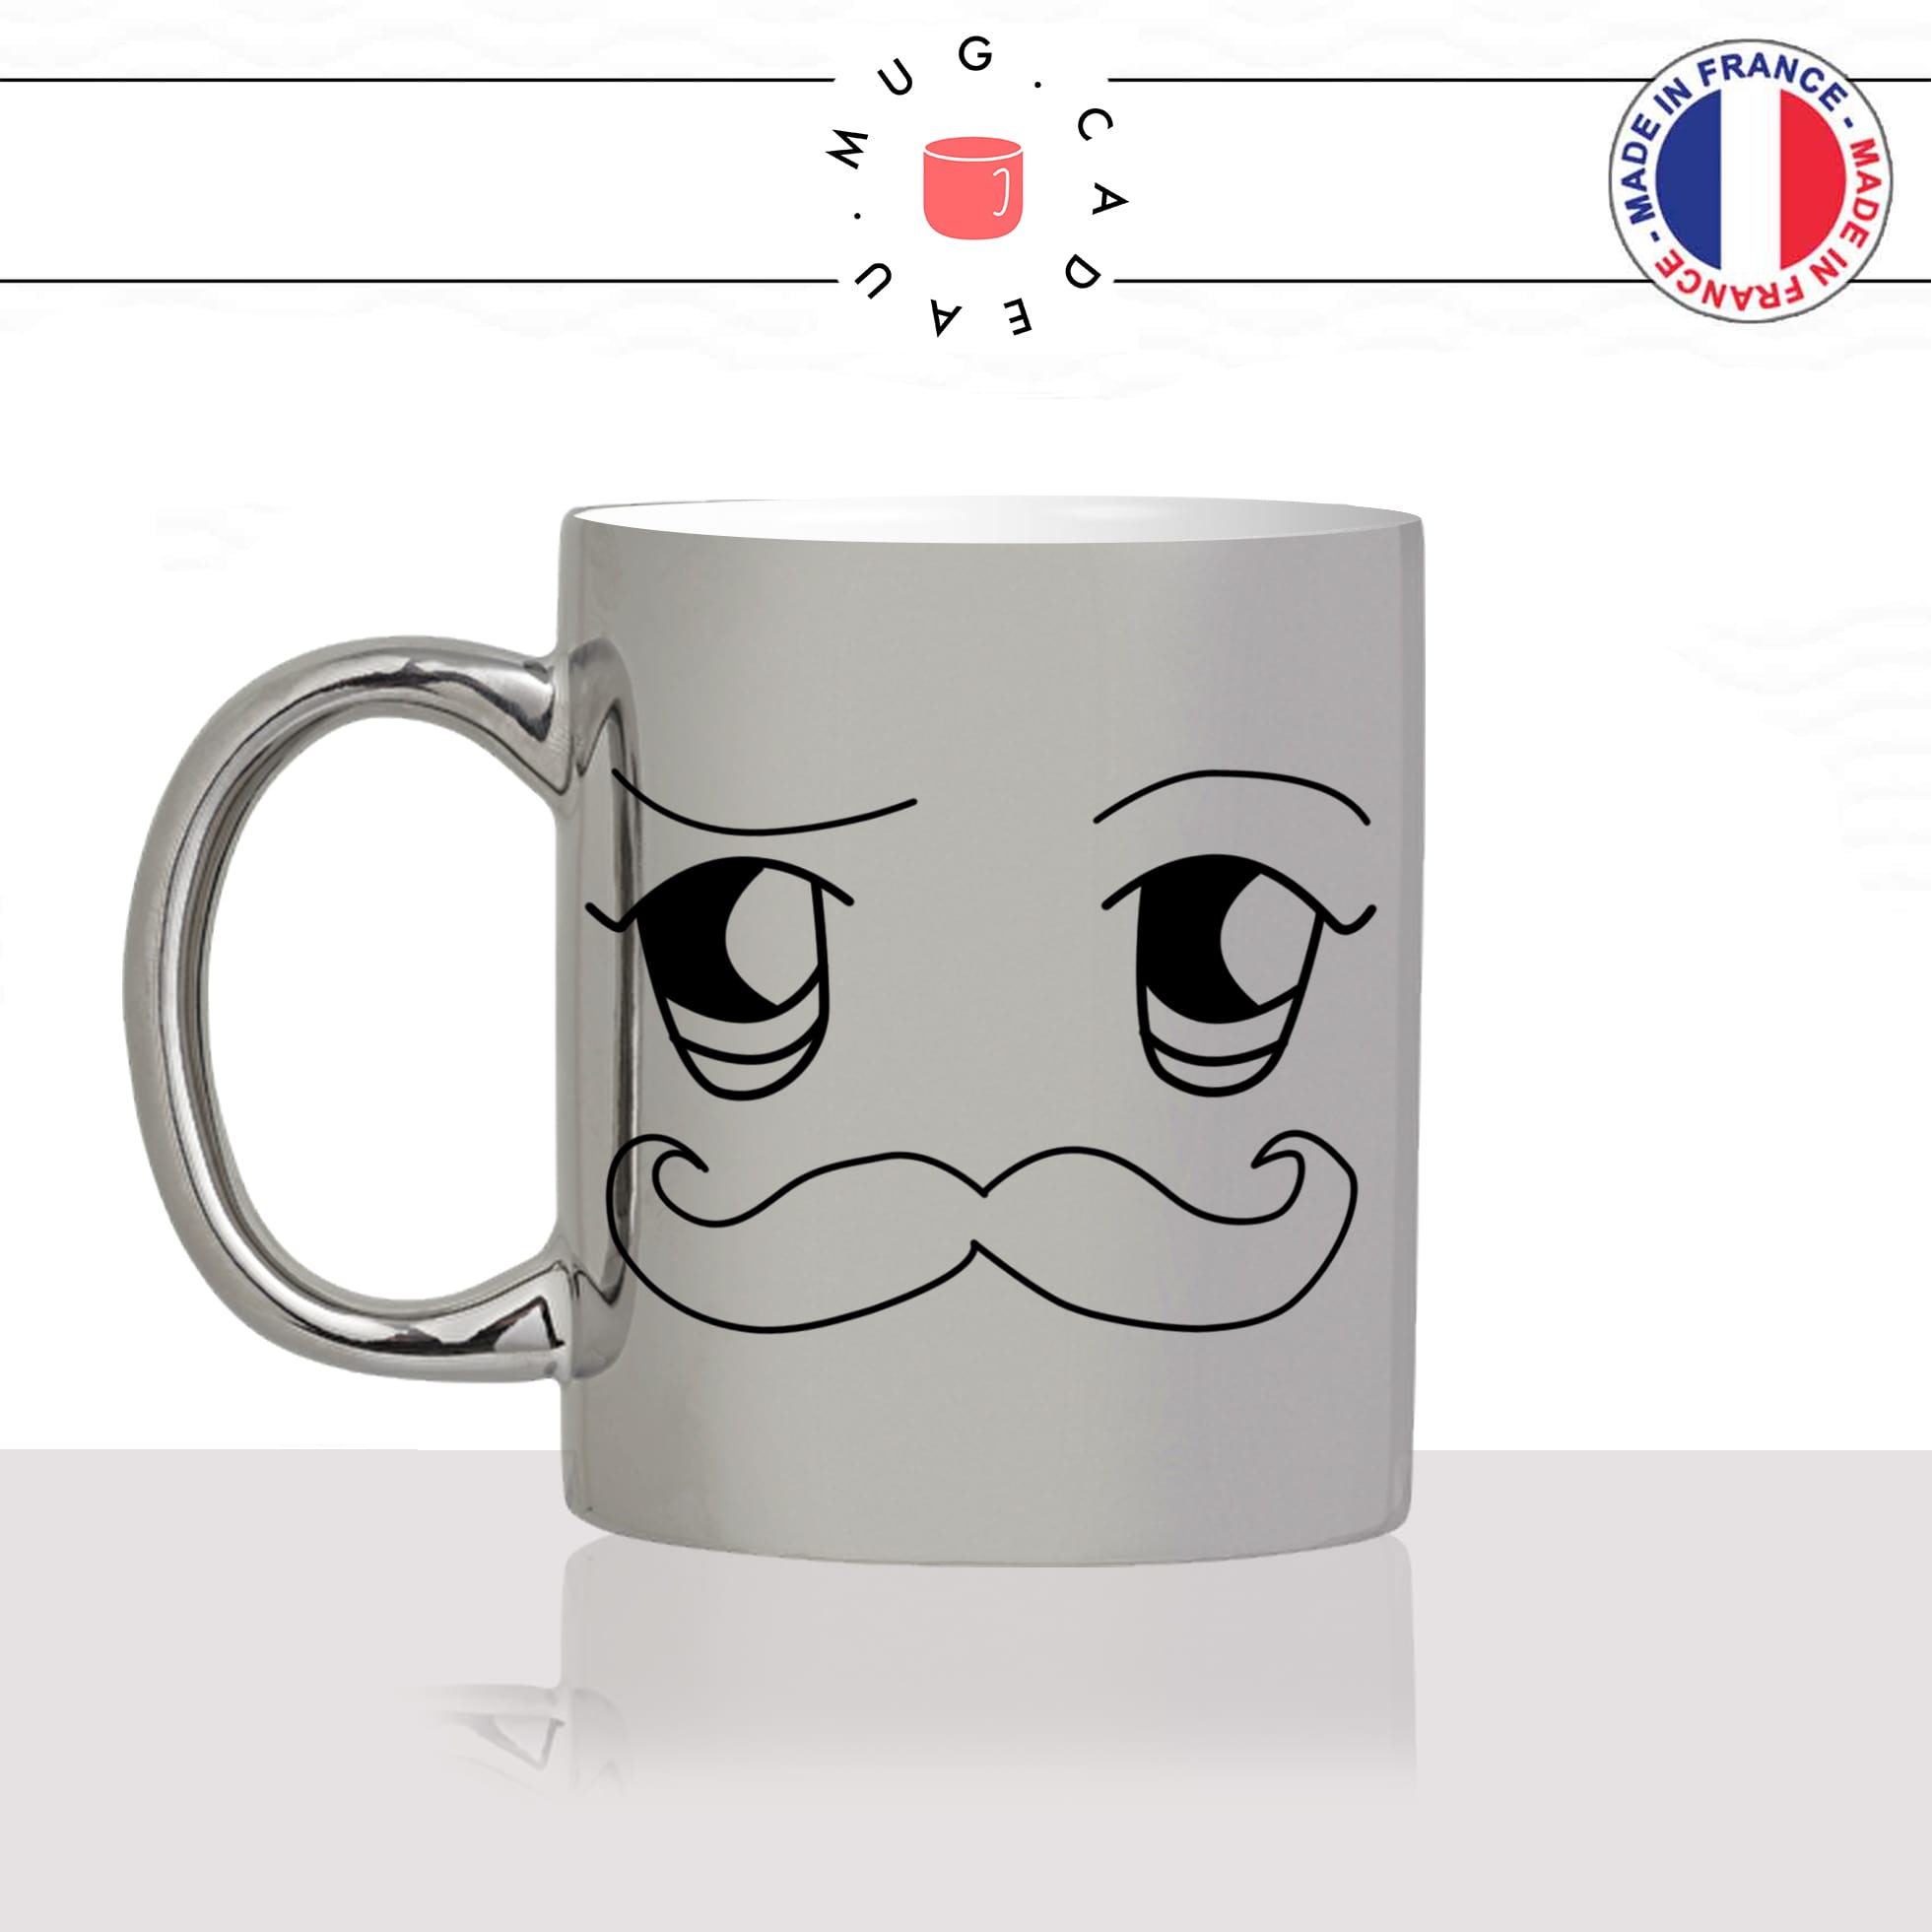 mug-tasse-silver-argenté-argent-moustache-homme-kawaii-dessin-mignon-animal-noir-fun-café-thé-idée-cadeau-original-personnalisé-min